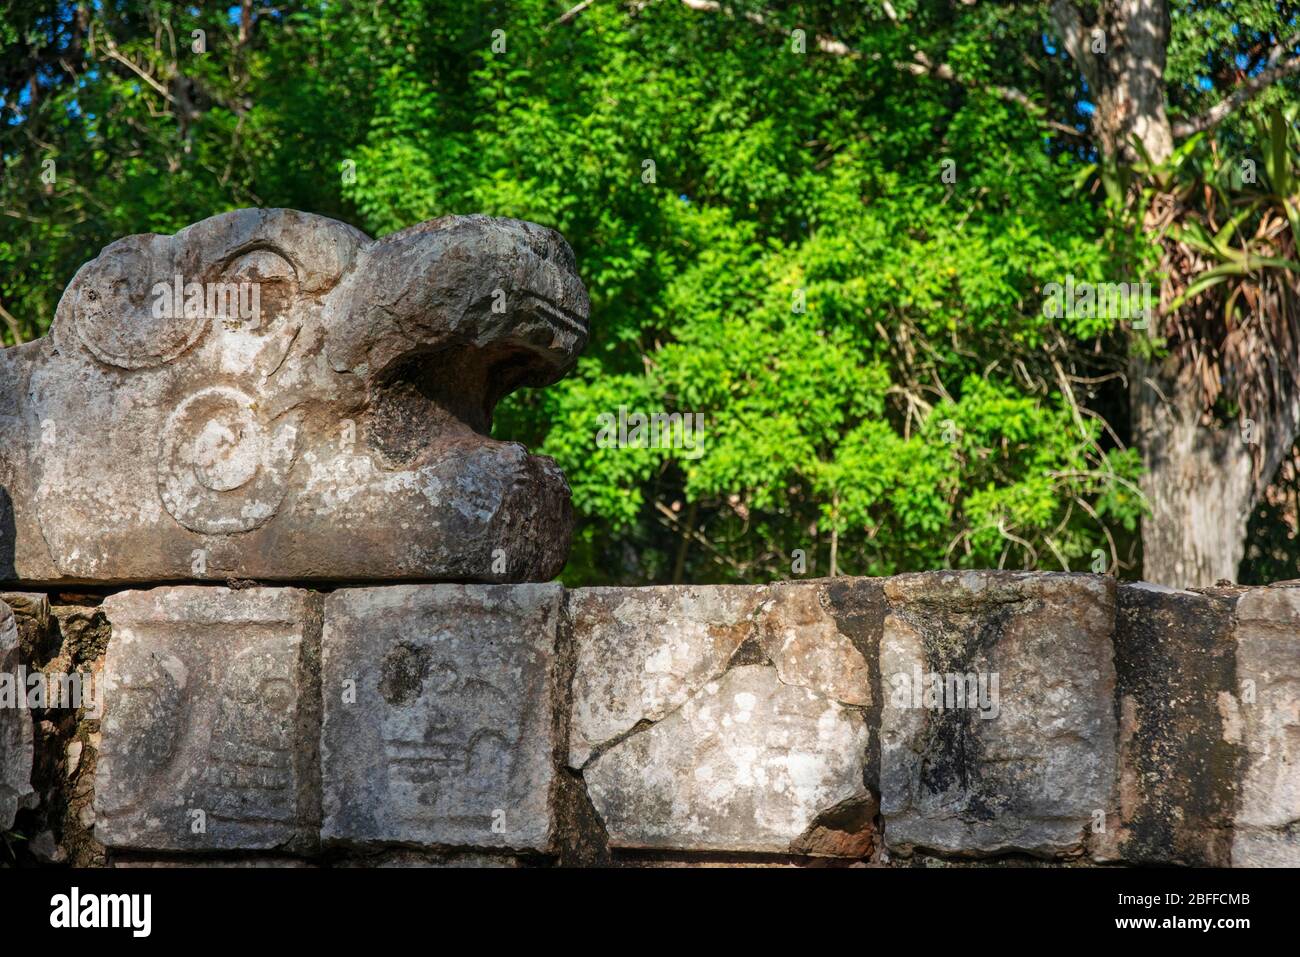 Schlangenkopf-Skulptur in der Maya-Ruine von Chichen Itza Archäologische Stätte auf der Halbinsel Yucatan, Quintana Roo, Karibikküste, Mexiko Stockfoto